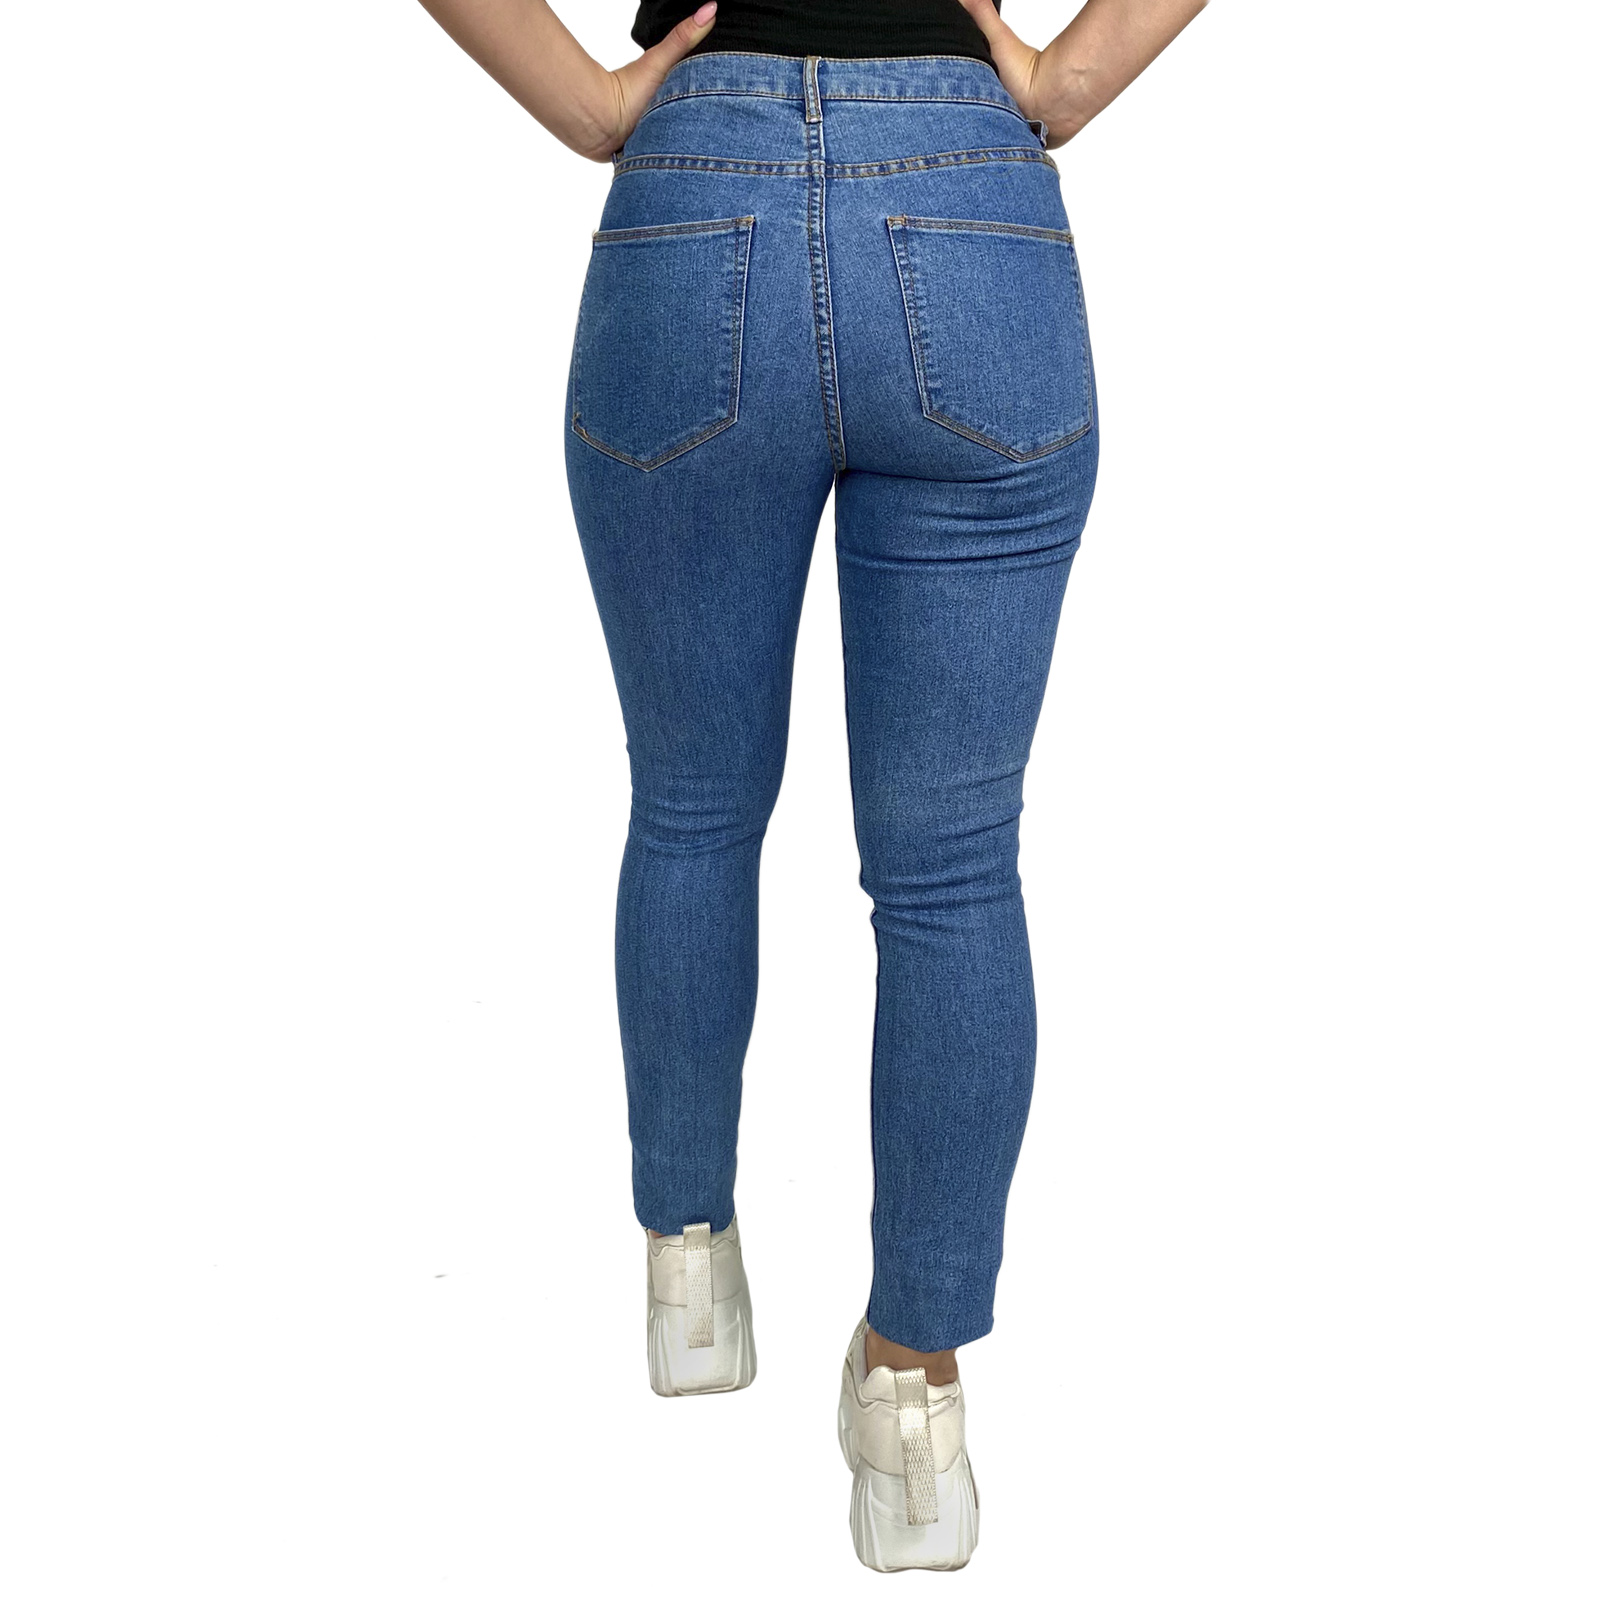 Облегающие фирменные джинсы и другая одежда для девушек и женщин